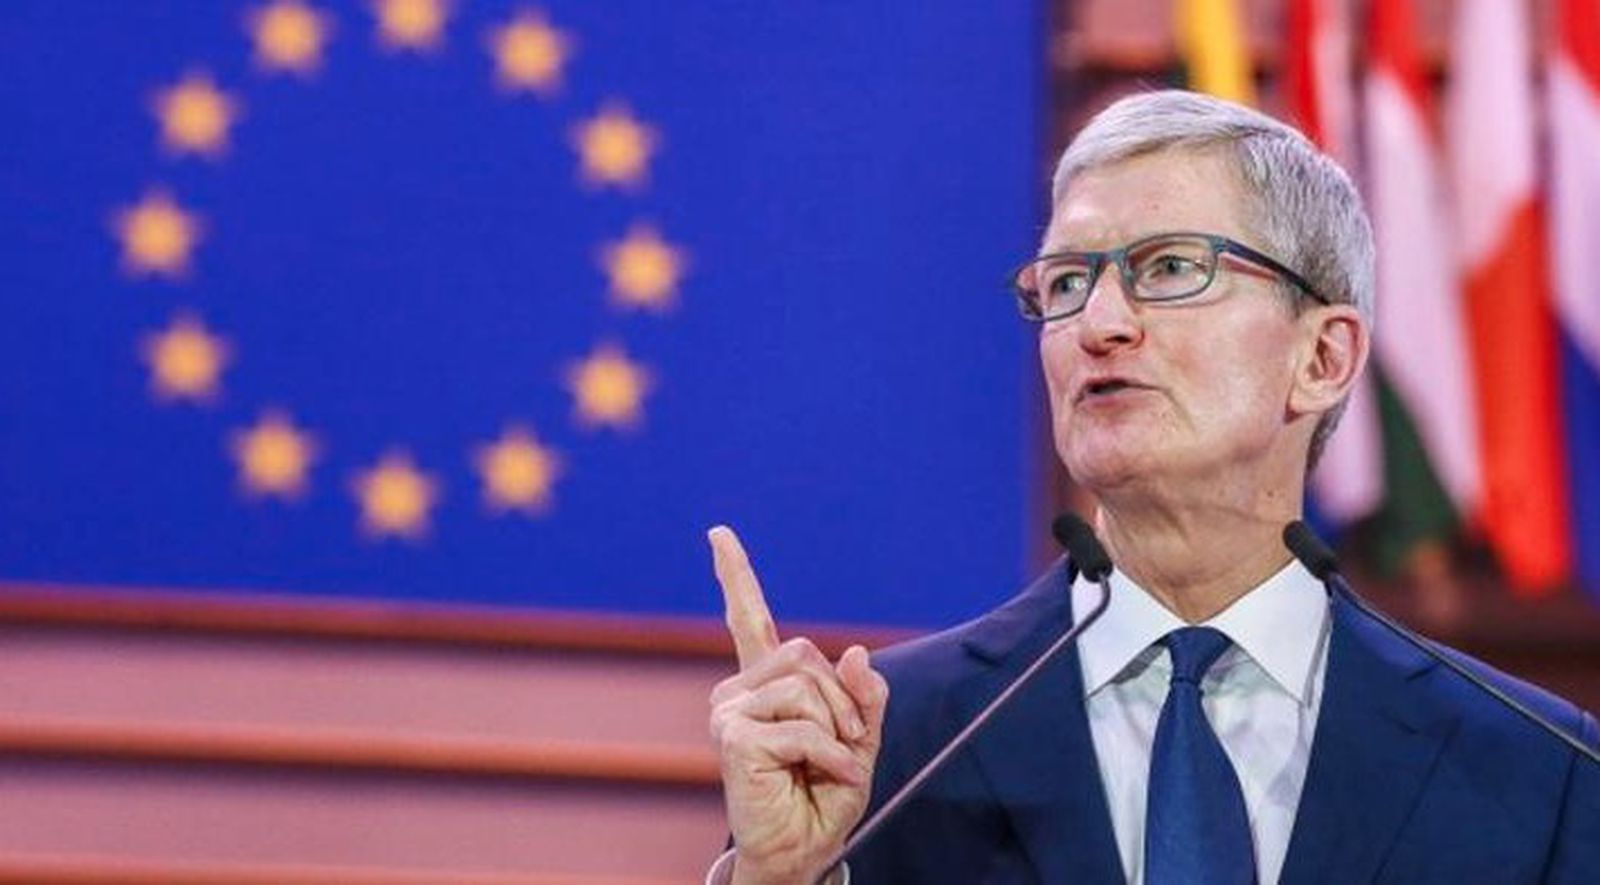 Ο Διευθύνων Σύμβουλος της Apple, Tim Cook, θα συναντηθεί με την επικεφαλής της αντιμονοπωλιακής νομοθεσίας της ΕΕ την επόμενη εβδομάδα